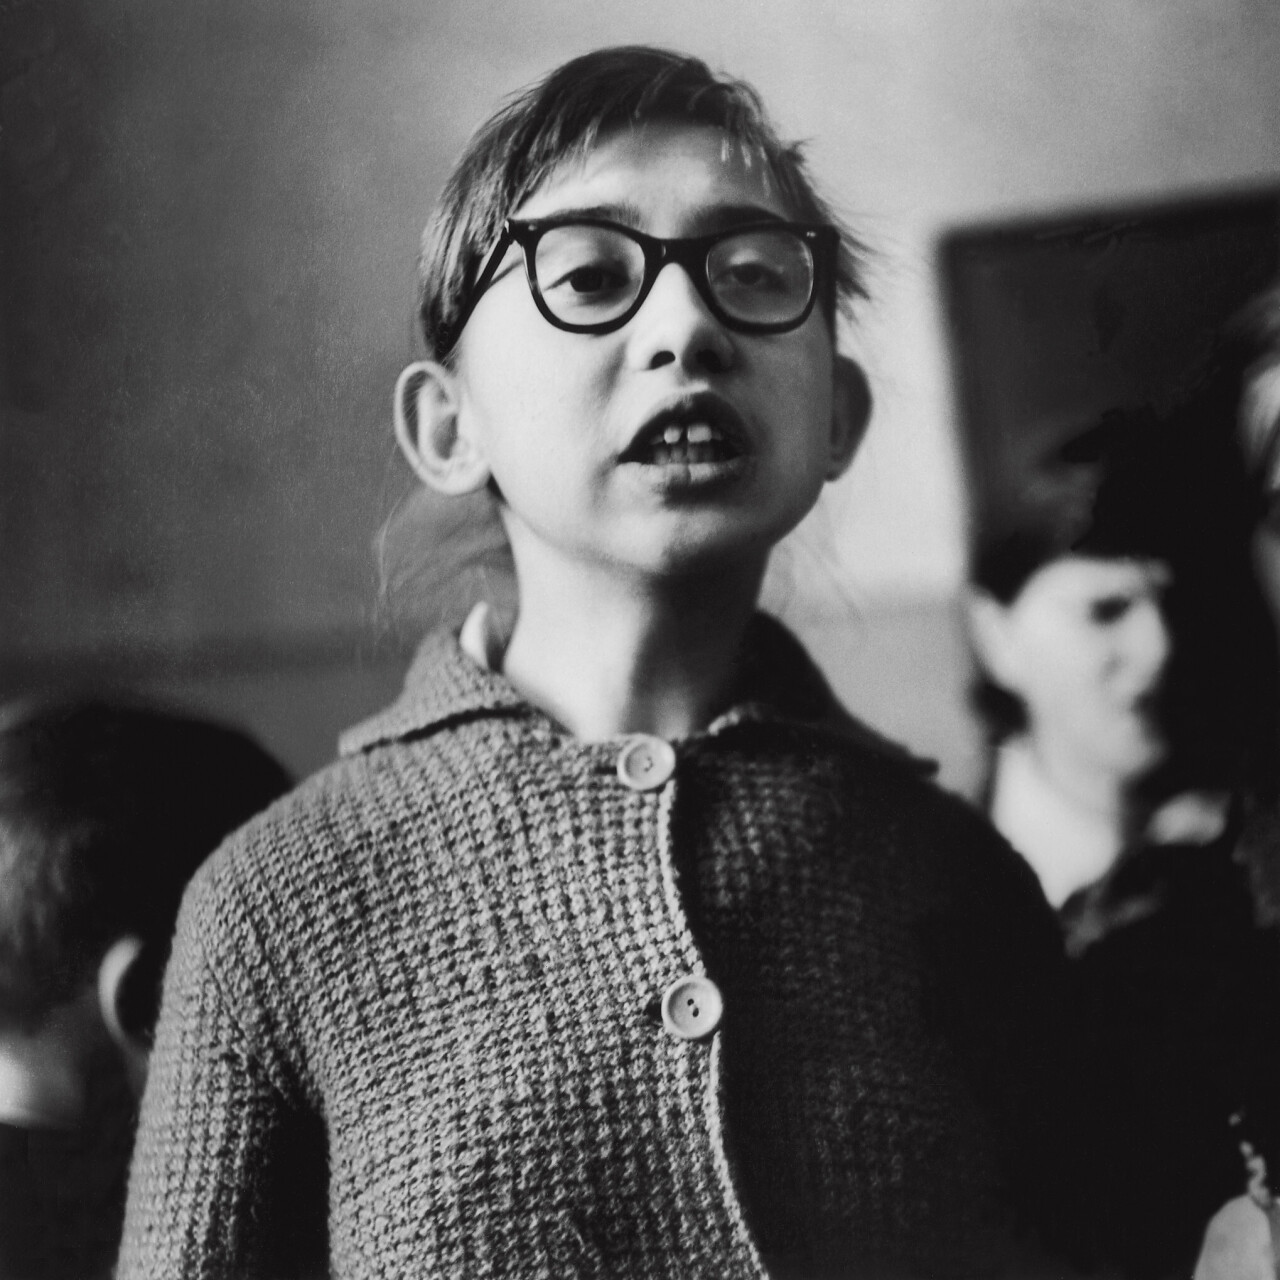 Школа для слепых детей, Песня, Каунас, 1962 год, фотограф Антанас Суткус